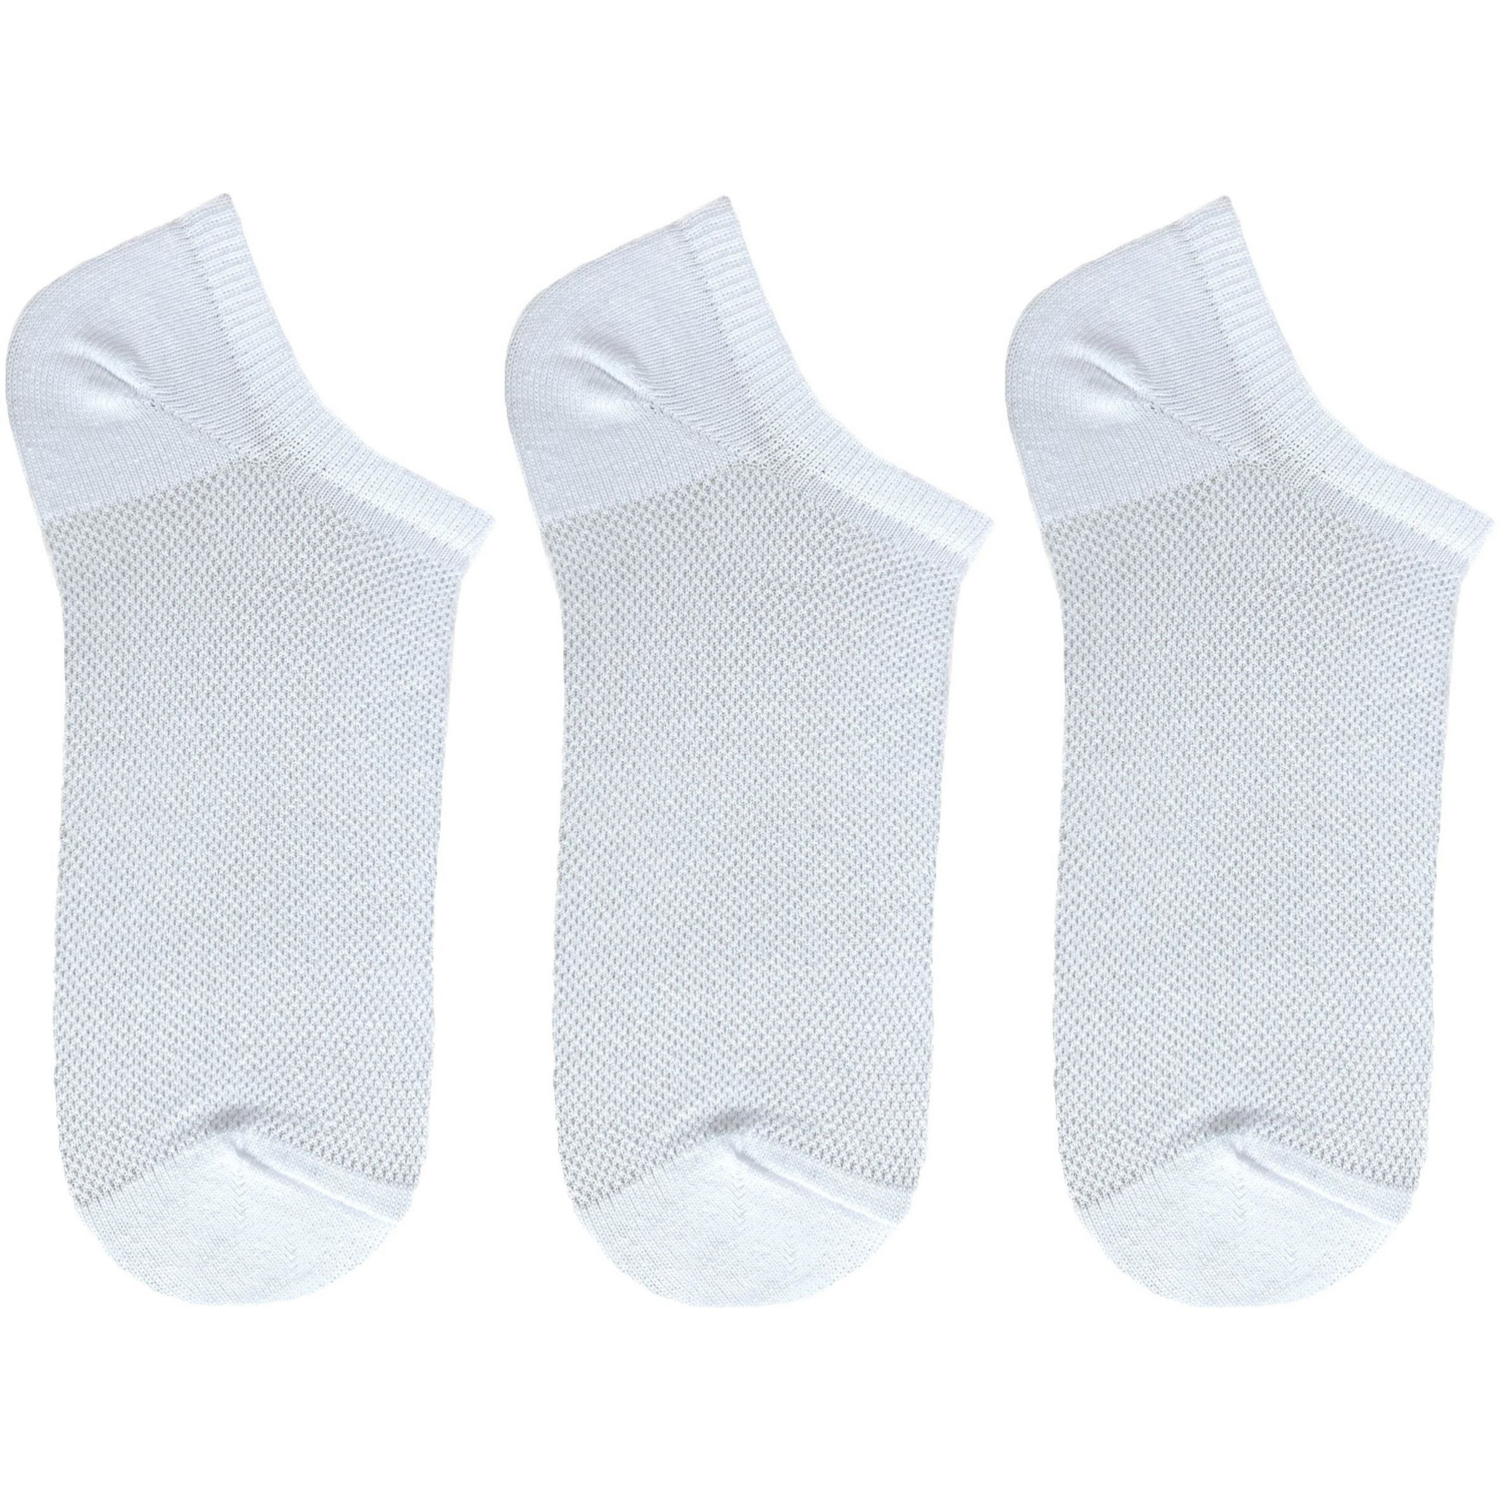 Набор носков женские Premier Socks 36-40 3 пары белые (4820163319391) фото 